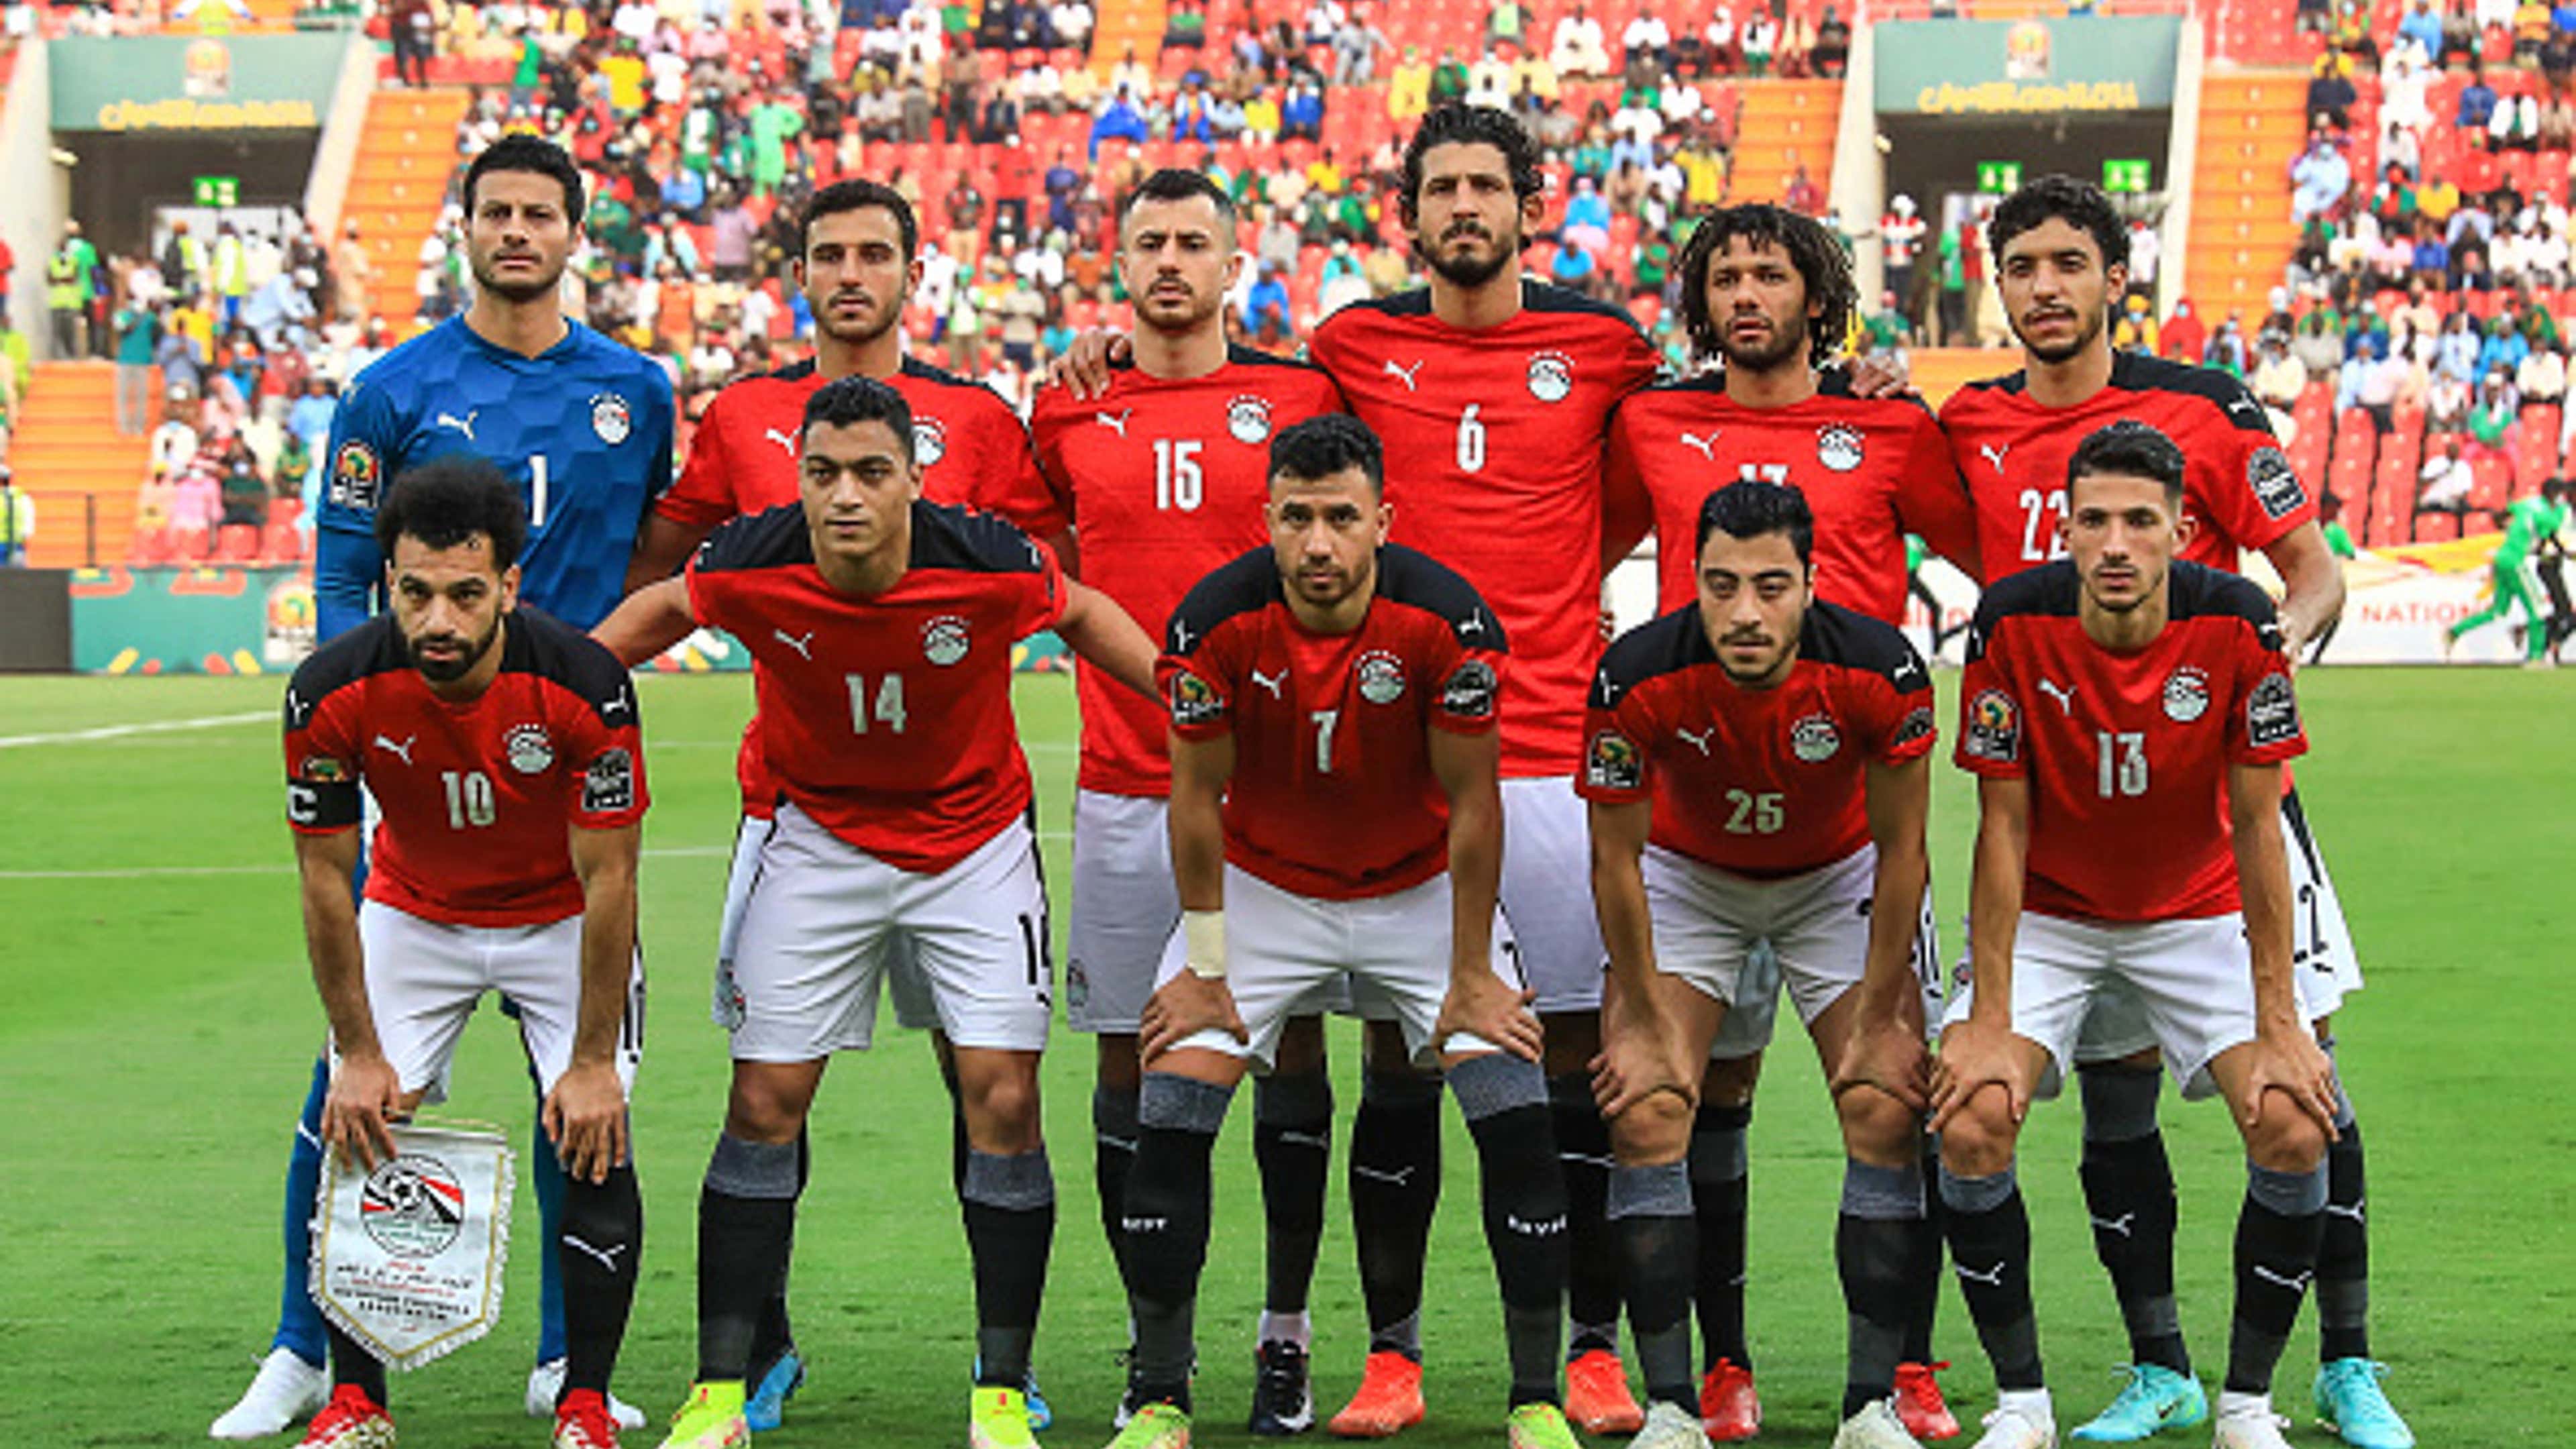 كل شيء طبيعي .. لا تشعروا بالصدمة من أداء منتخب مصر! | مصر Goal.com